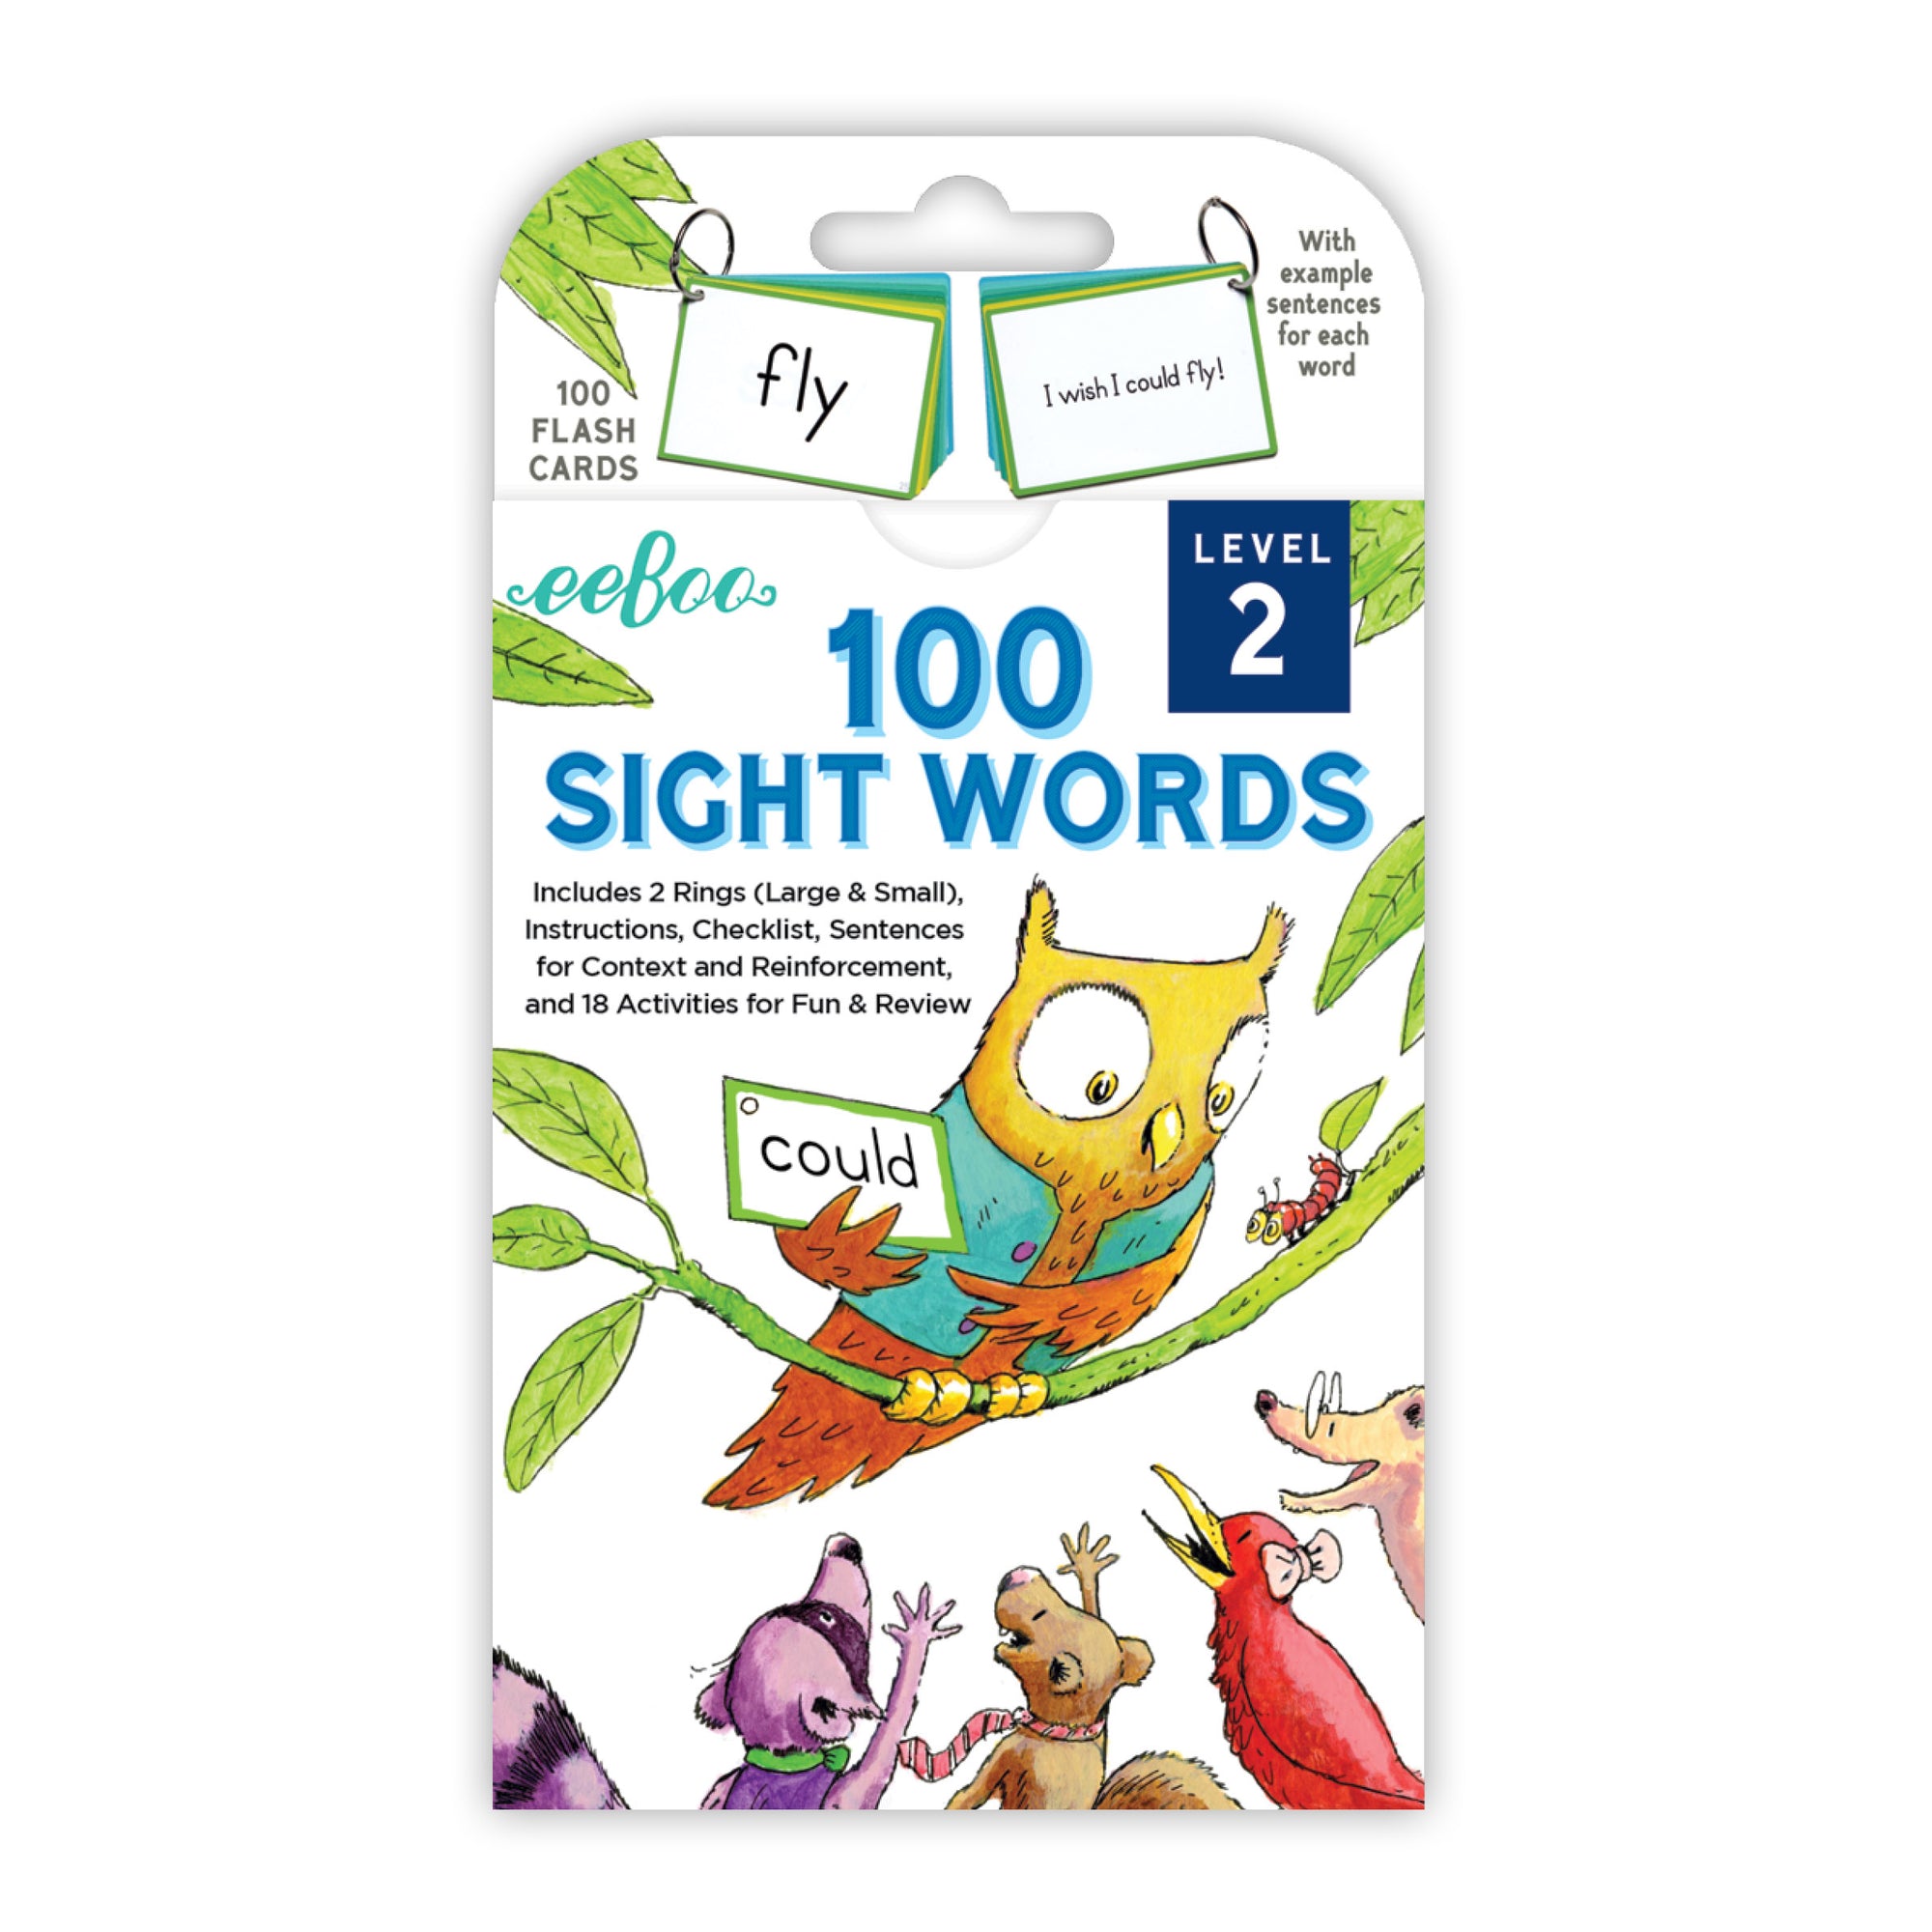 100 Sight Words Level 3 - eeBoo